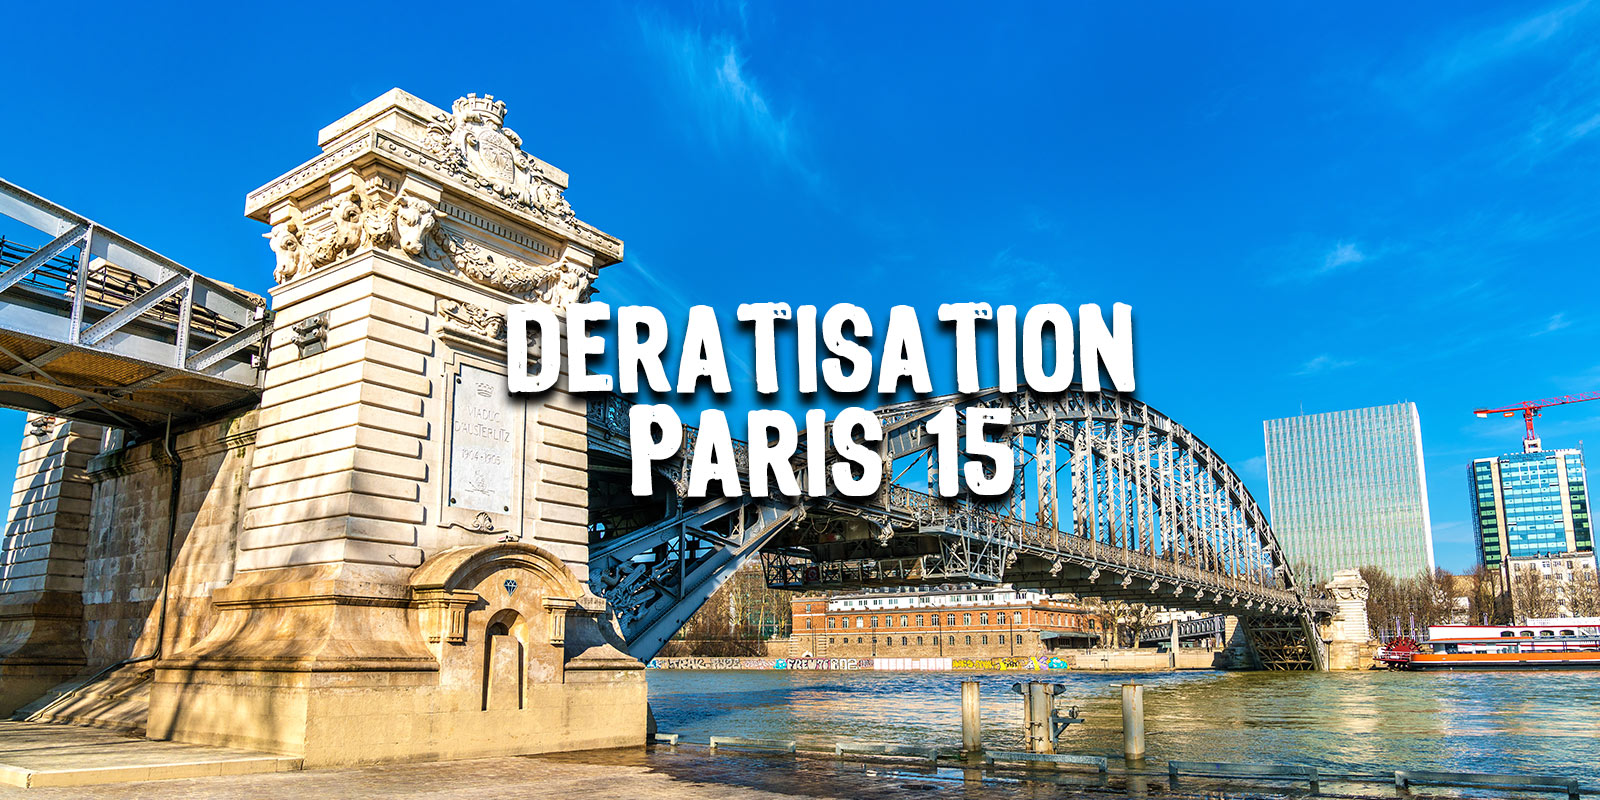 Dératisation Paris 15e